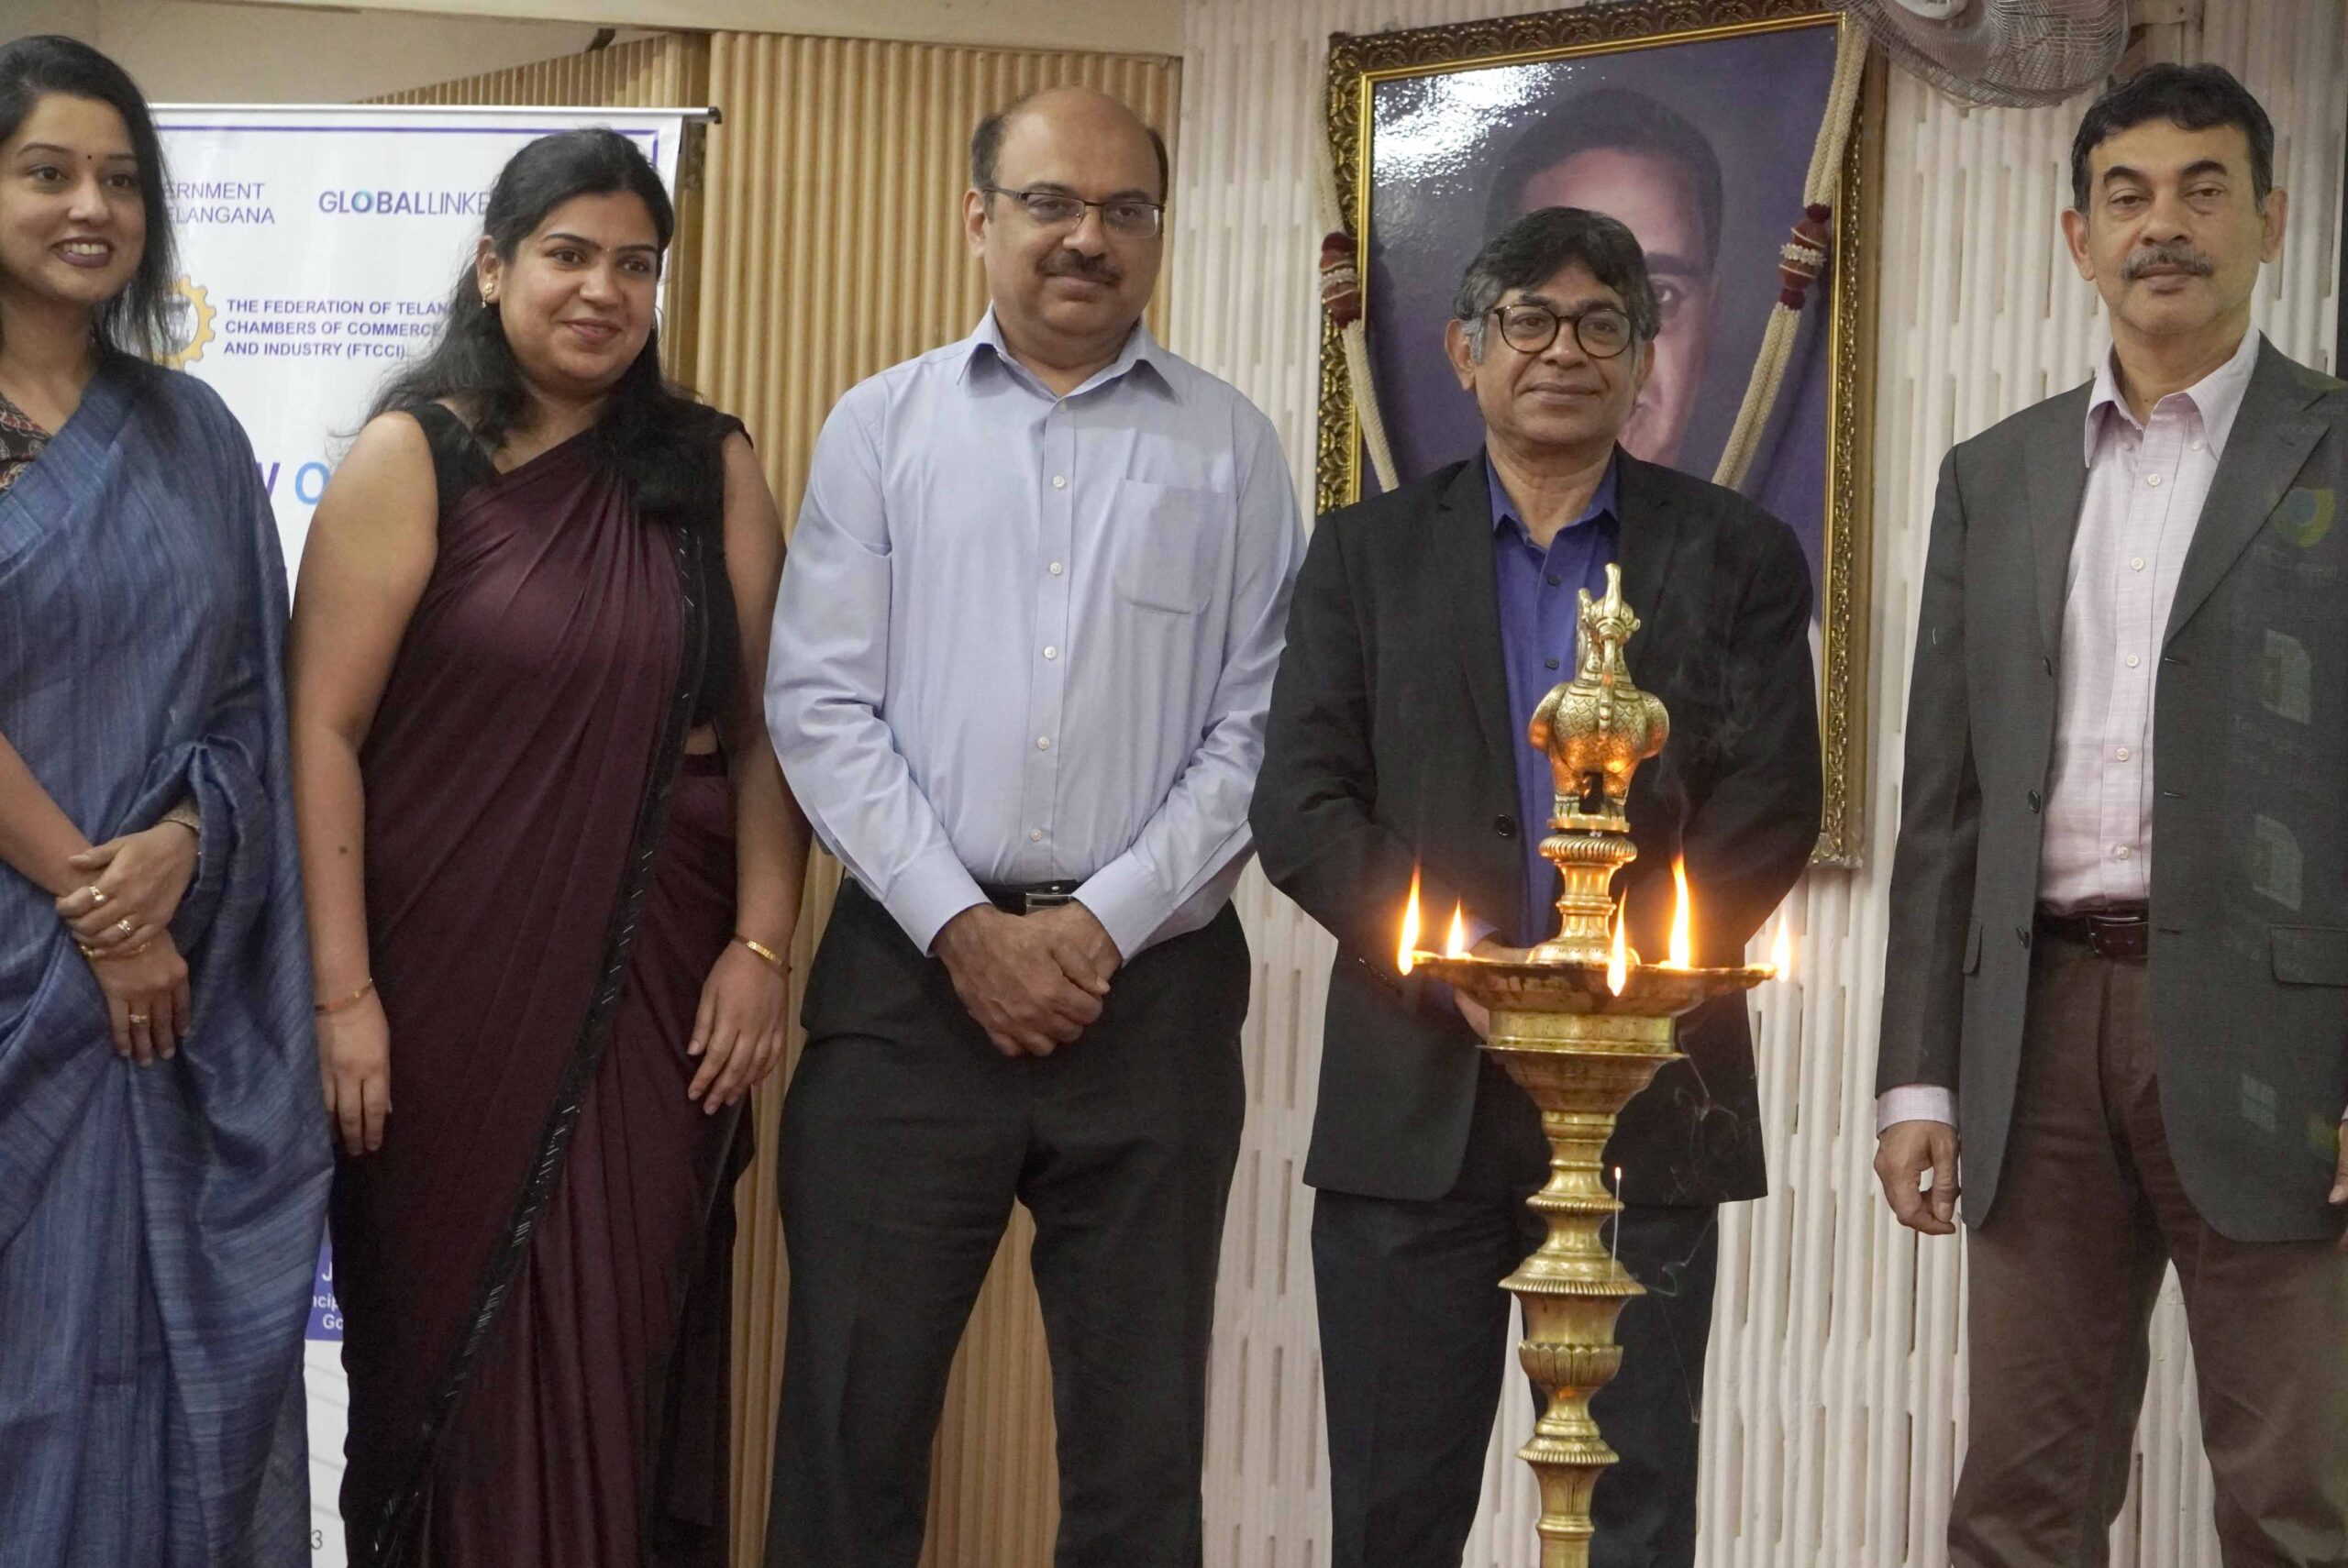 Khyati, Shireesh, Koshy and Jayesh Ranjan at the opening of the seminar on INDC